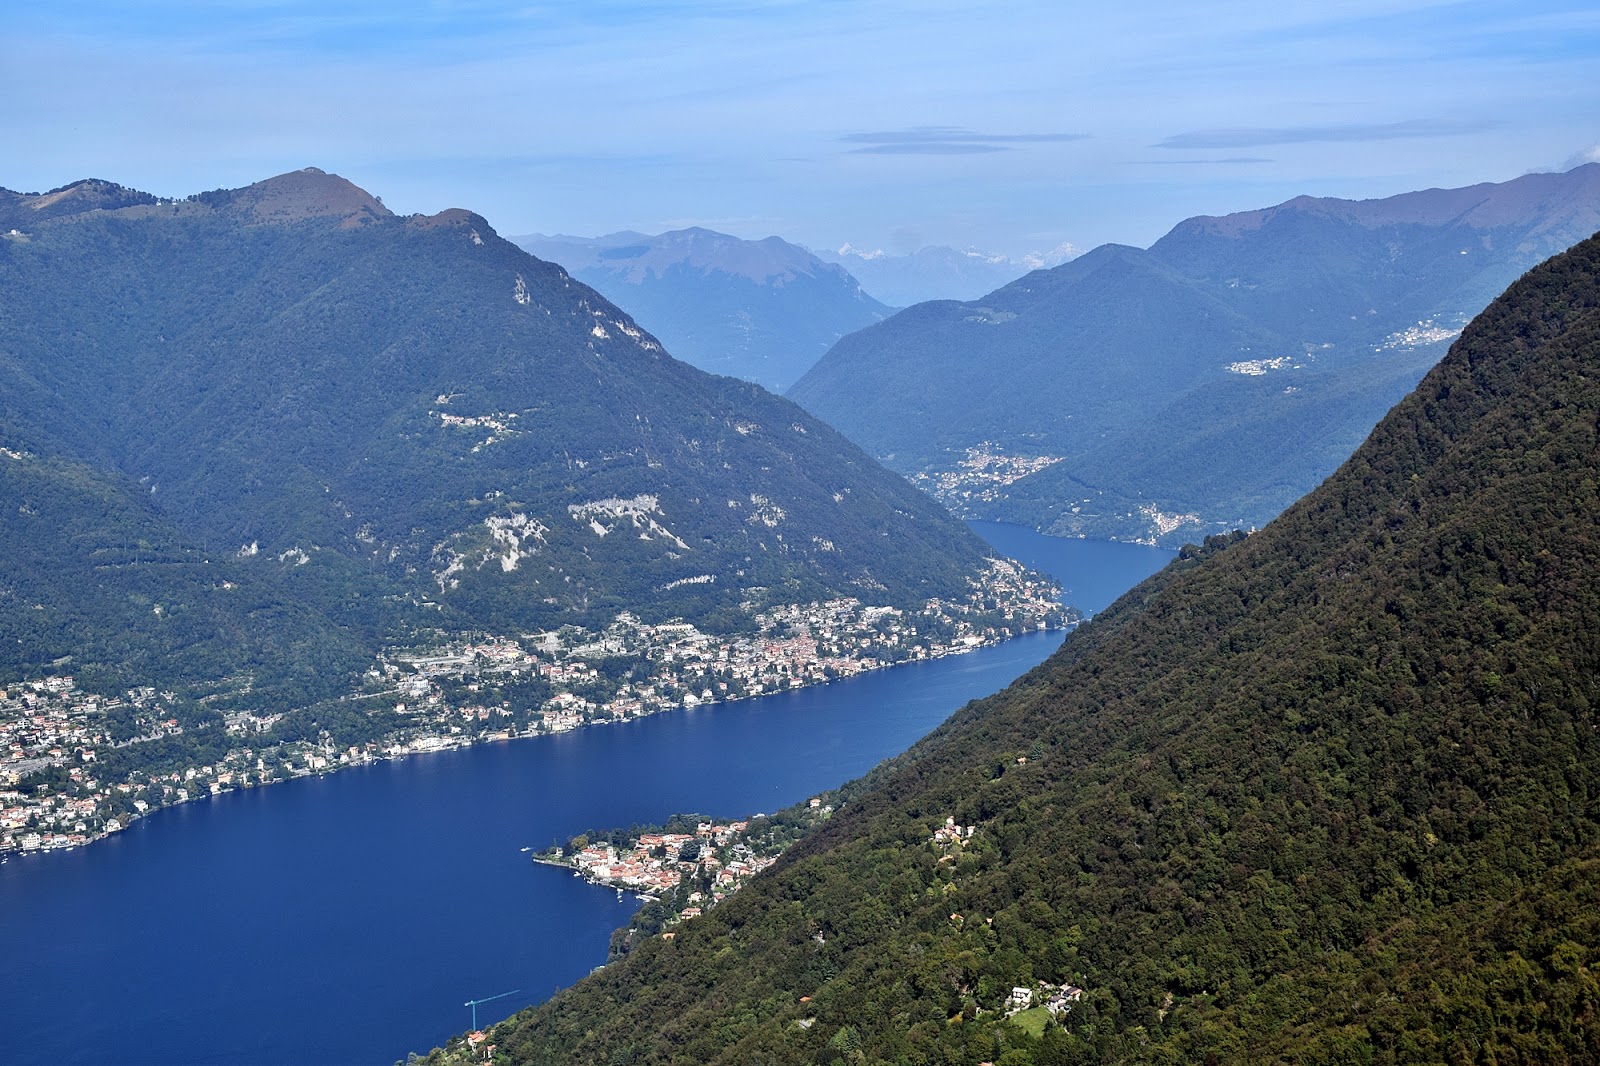 The view from Faro Voltiano to Lago di Como